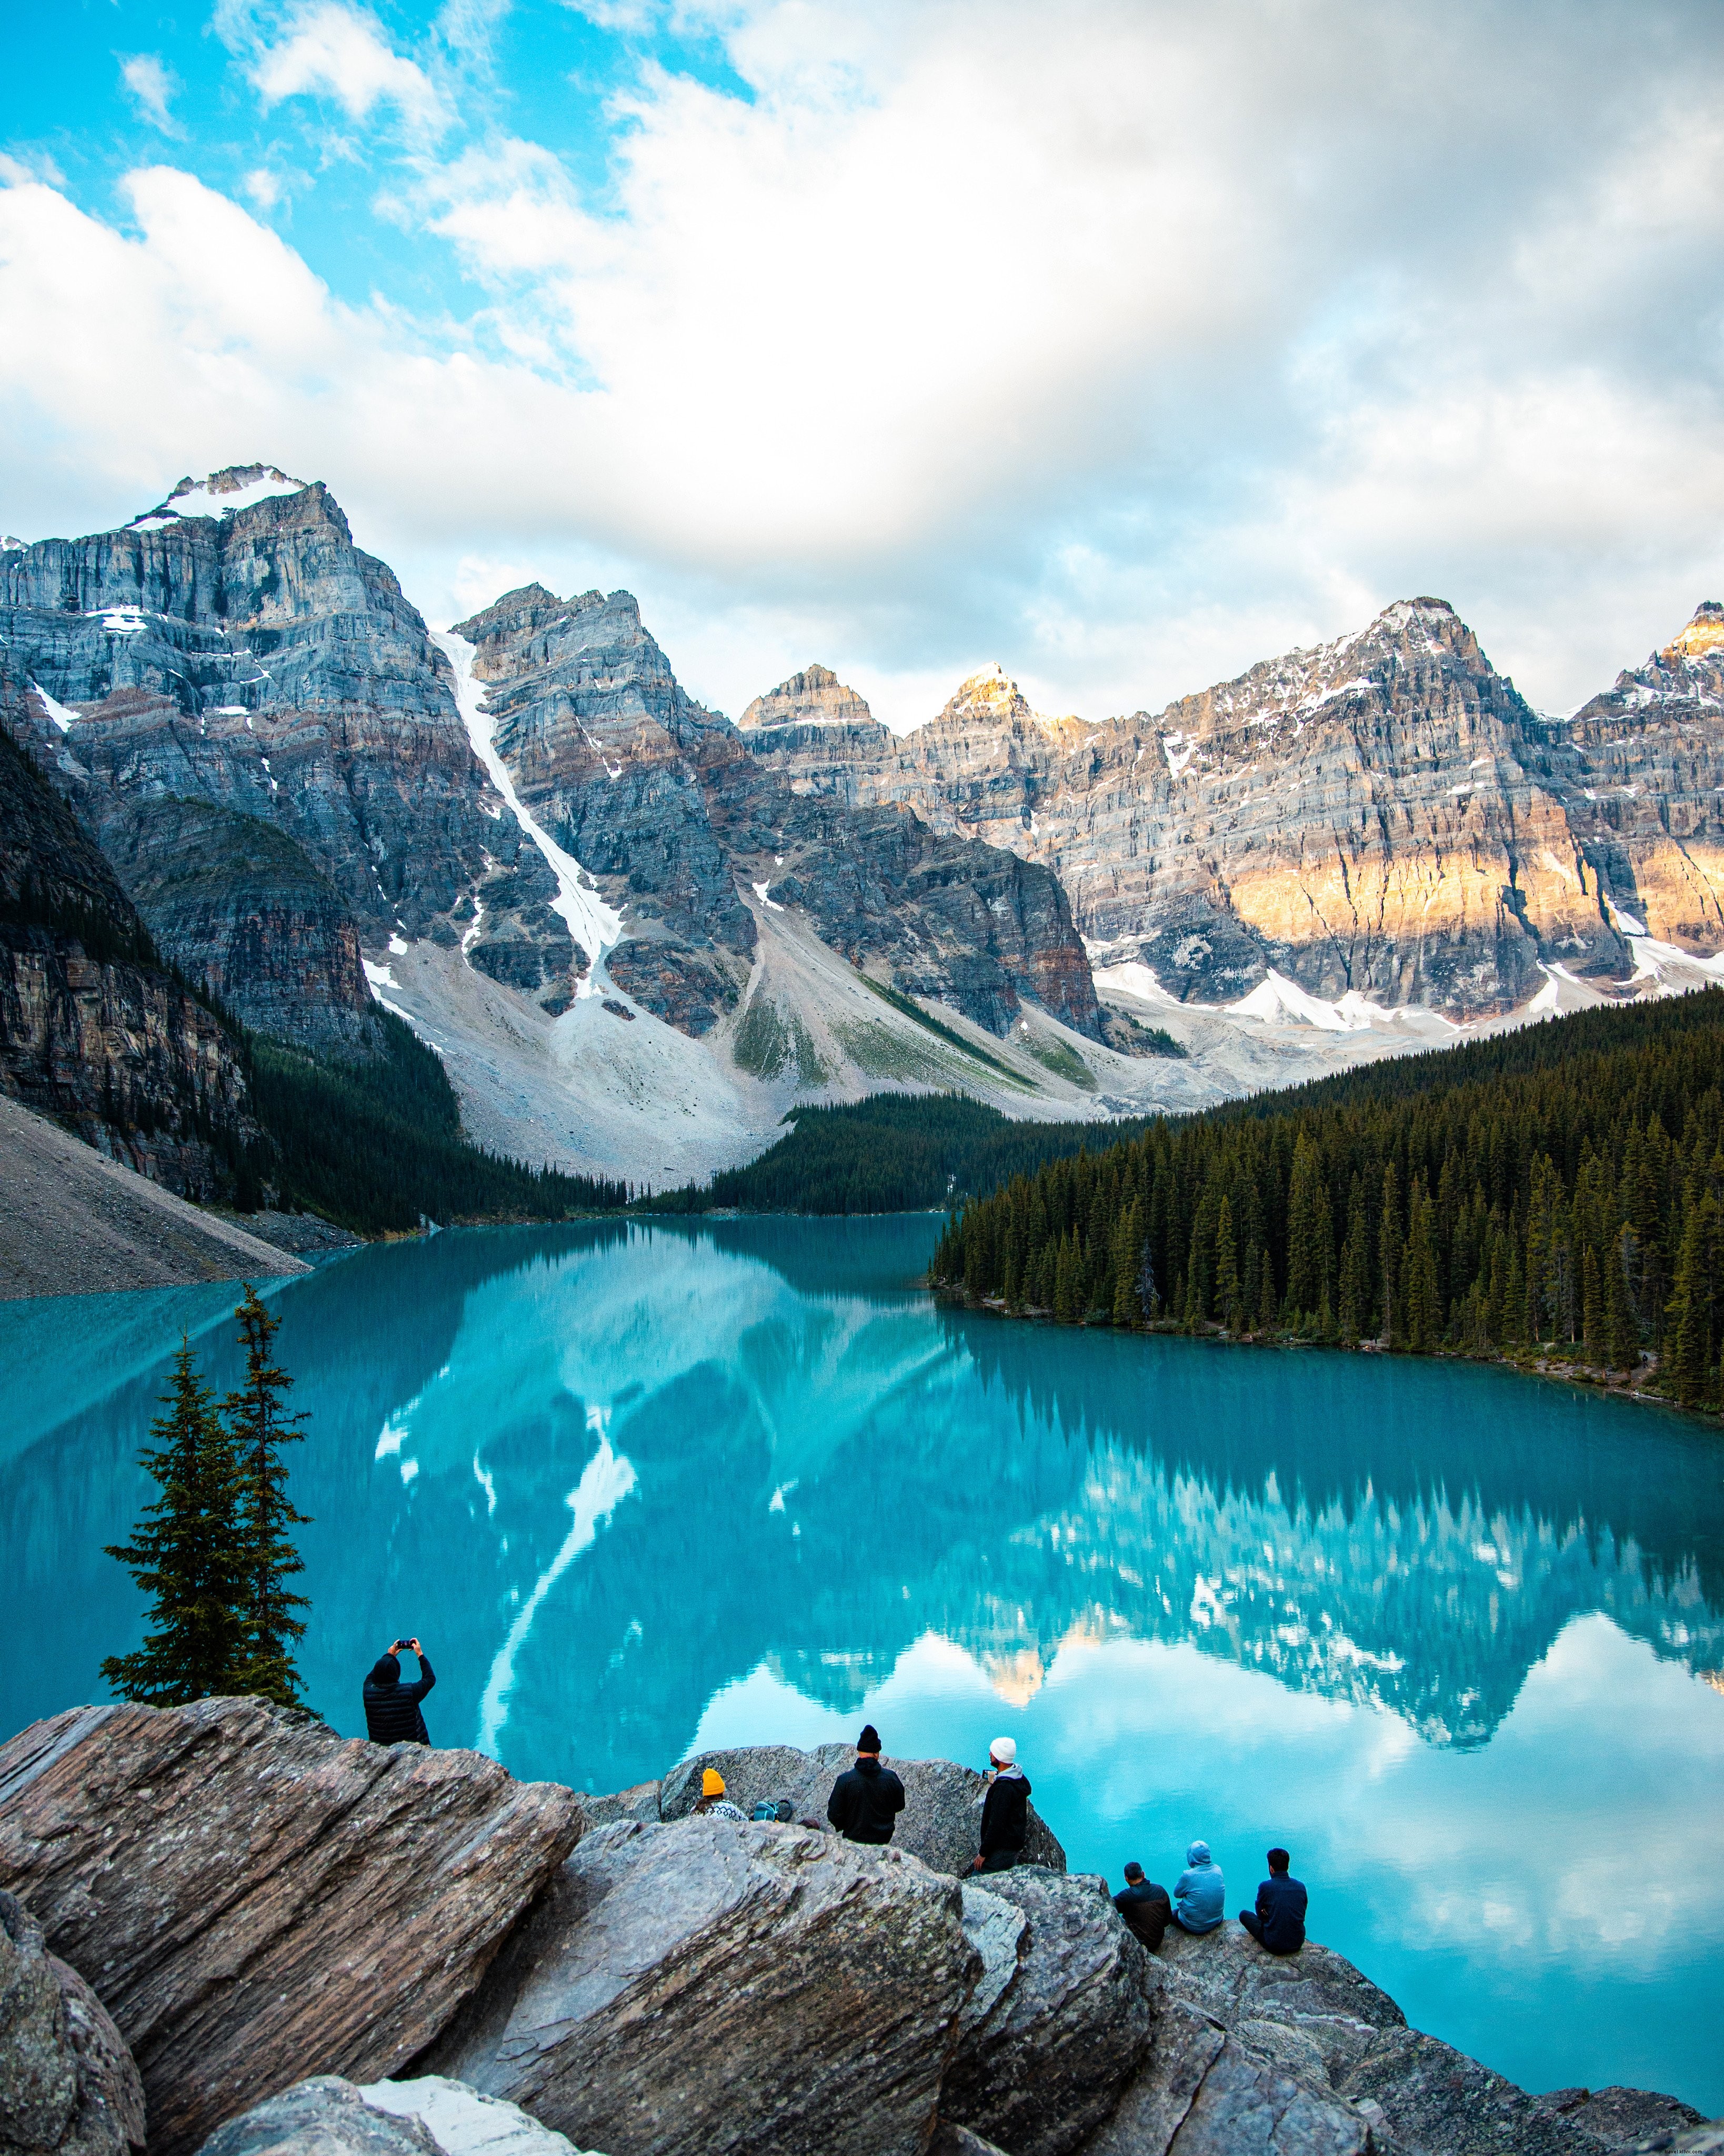 Les montagnes enneigées se reflètent dans un étang bleu Photo